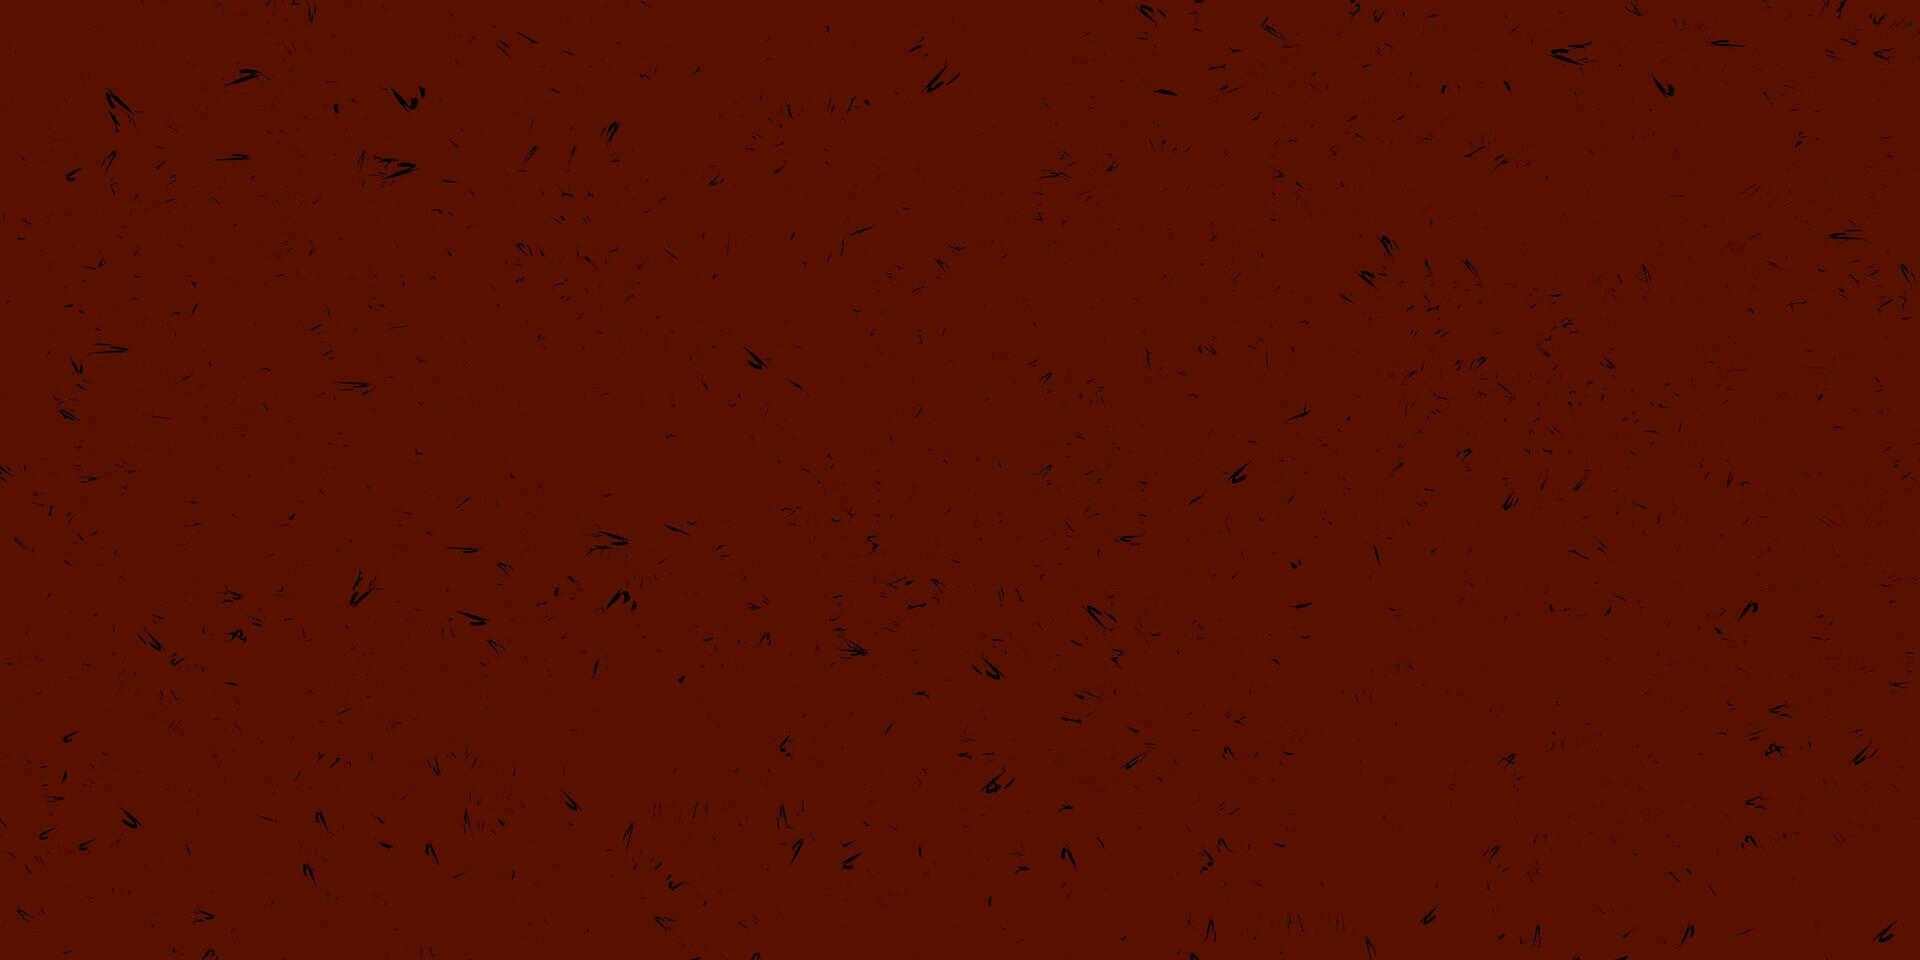 abstrato estilo grunge fundo. vetor vermelho manchado fundo com Preto grunge vetor textura. a textura do salpicos, barulho, sujeira